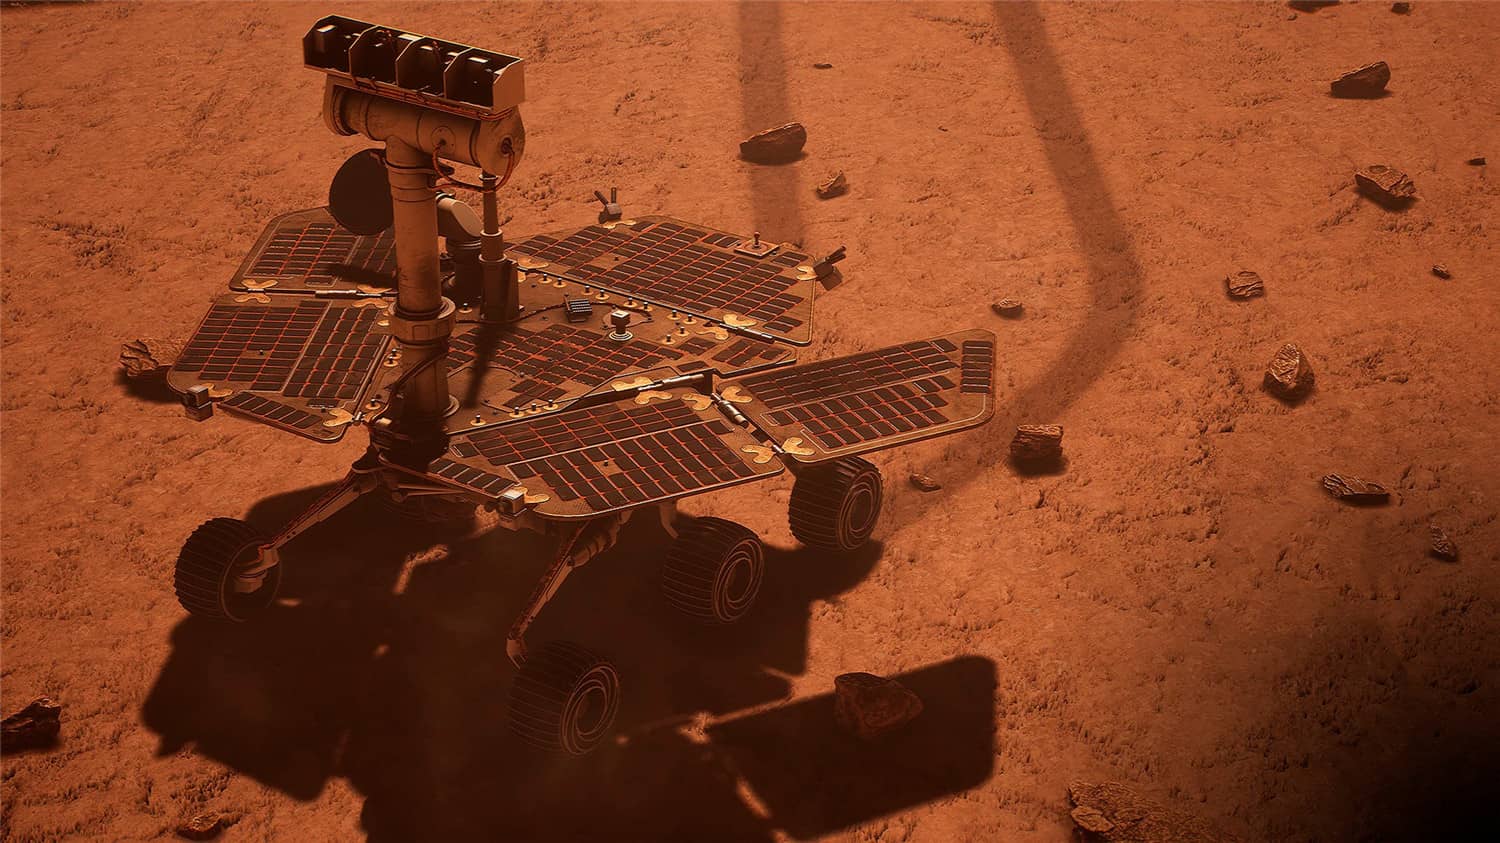 火星漫游者模拟器/Mars Rover Simulator插图9